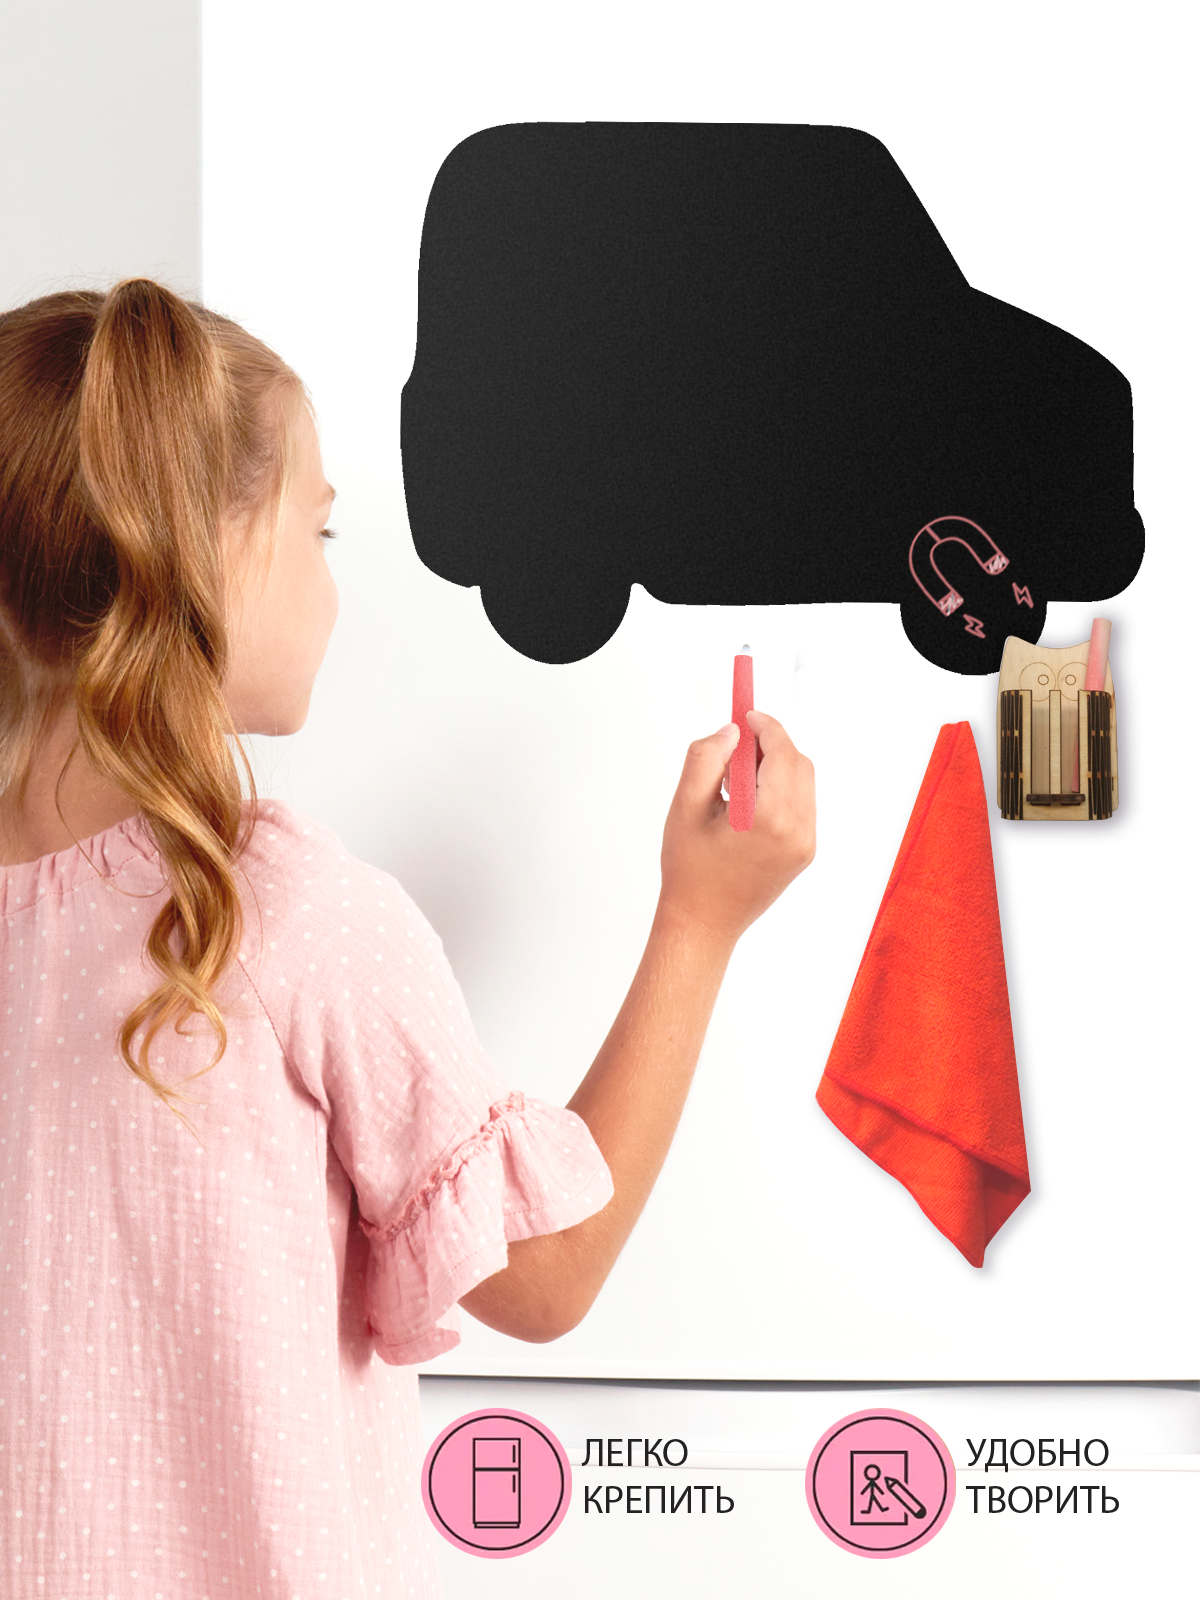 Магнитная меловая Доска Doski4you "Машинка" для рисования на холодильник, комплект / детская грифельная мел